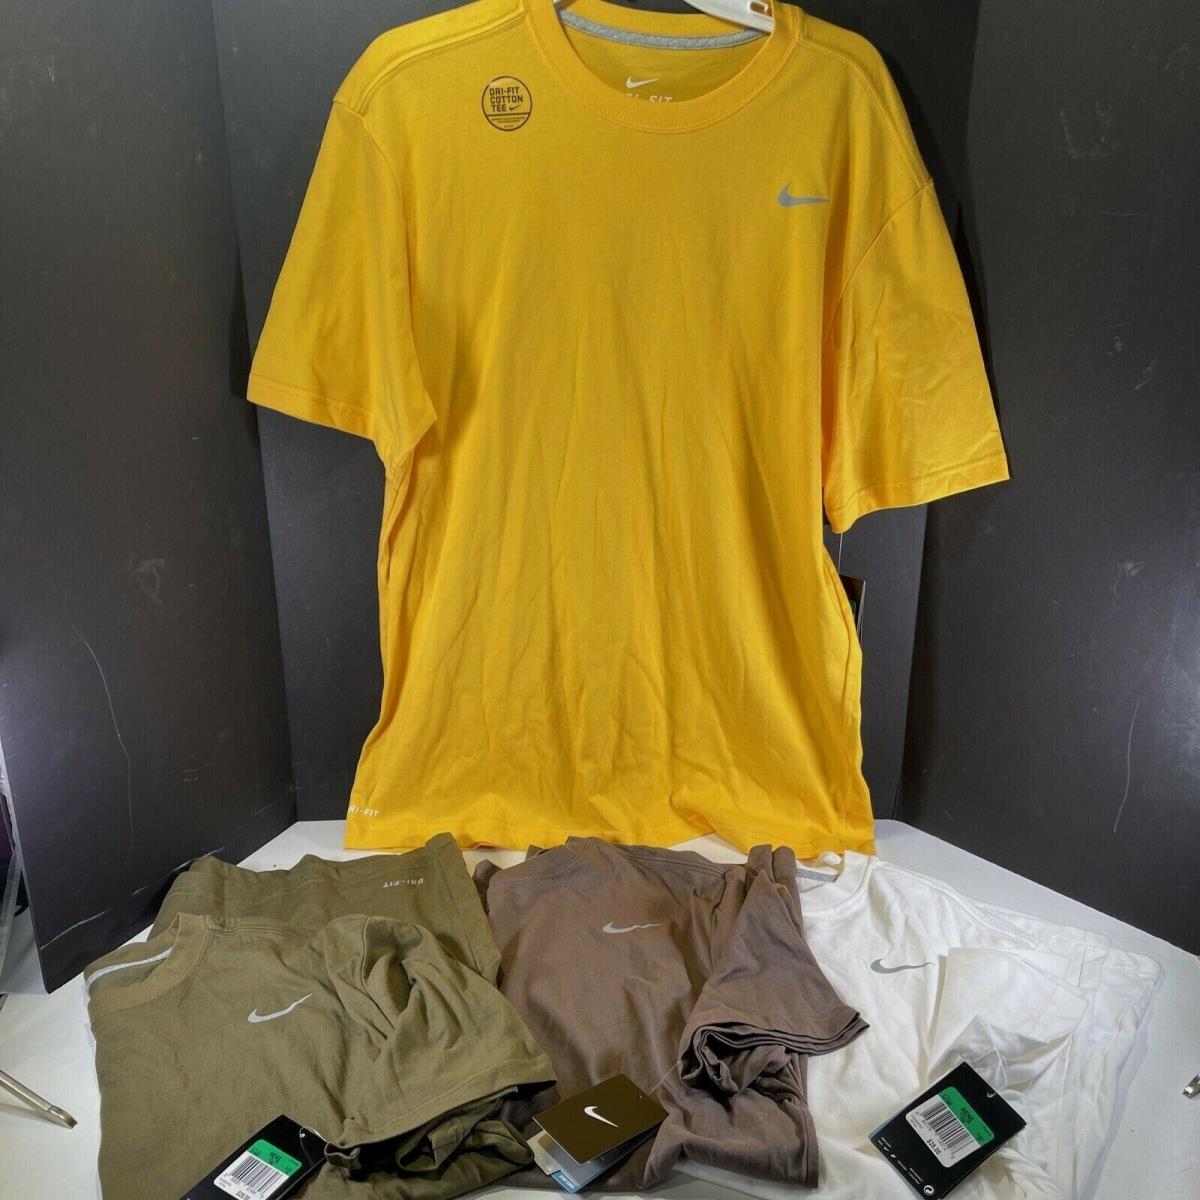 2012 Nos 4x Mens Nike Dri-fit Athletic Workout Shirt XL Yellow Green Tan White